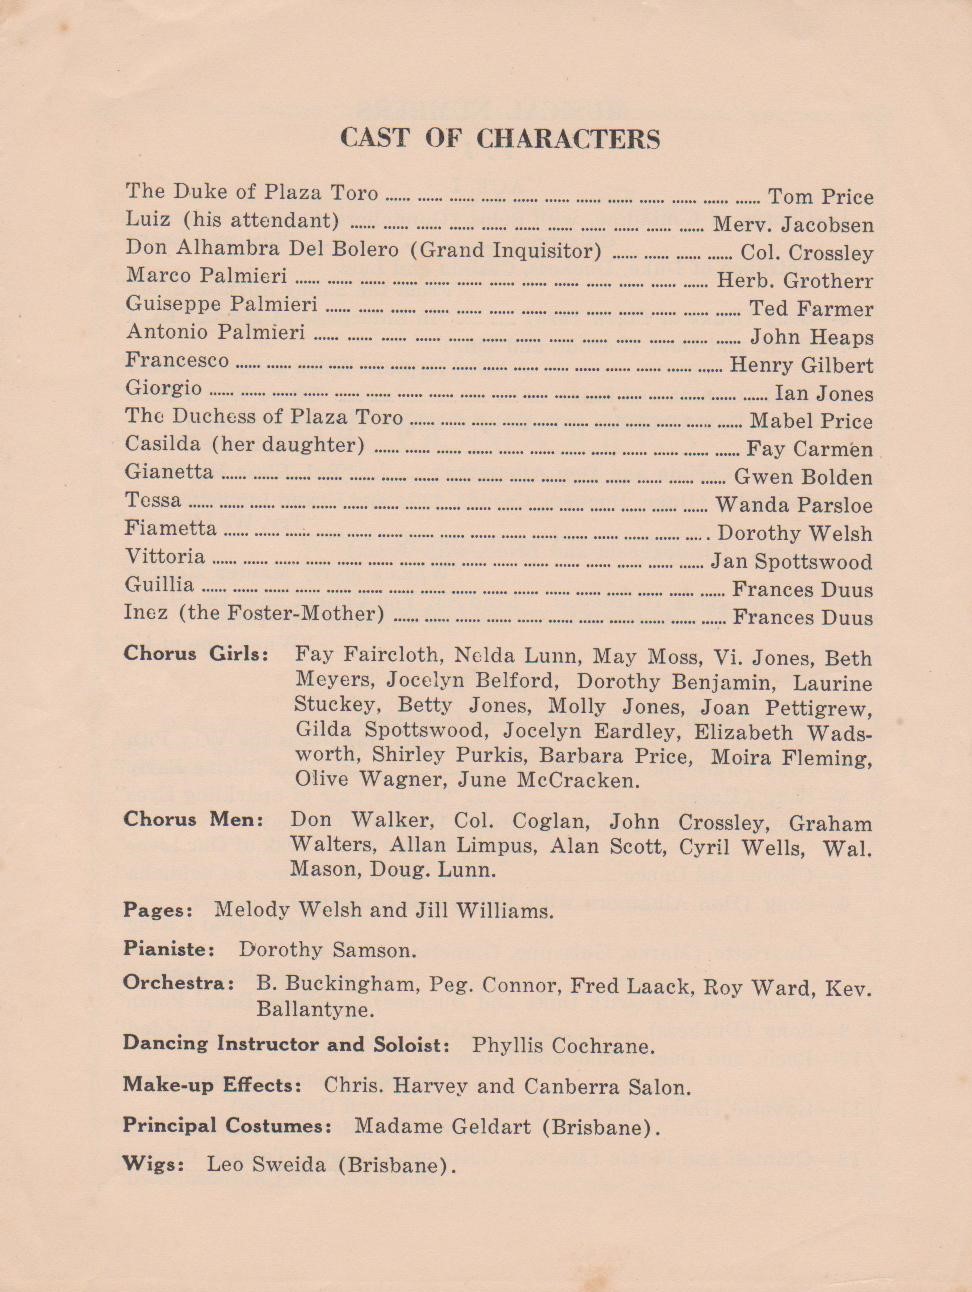 Cast List from the original program